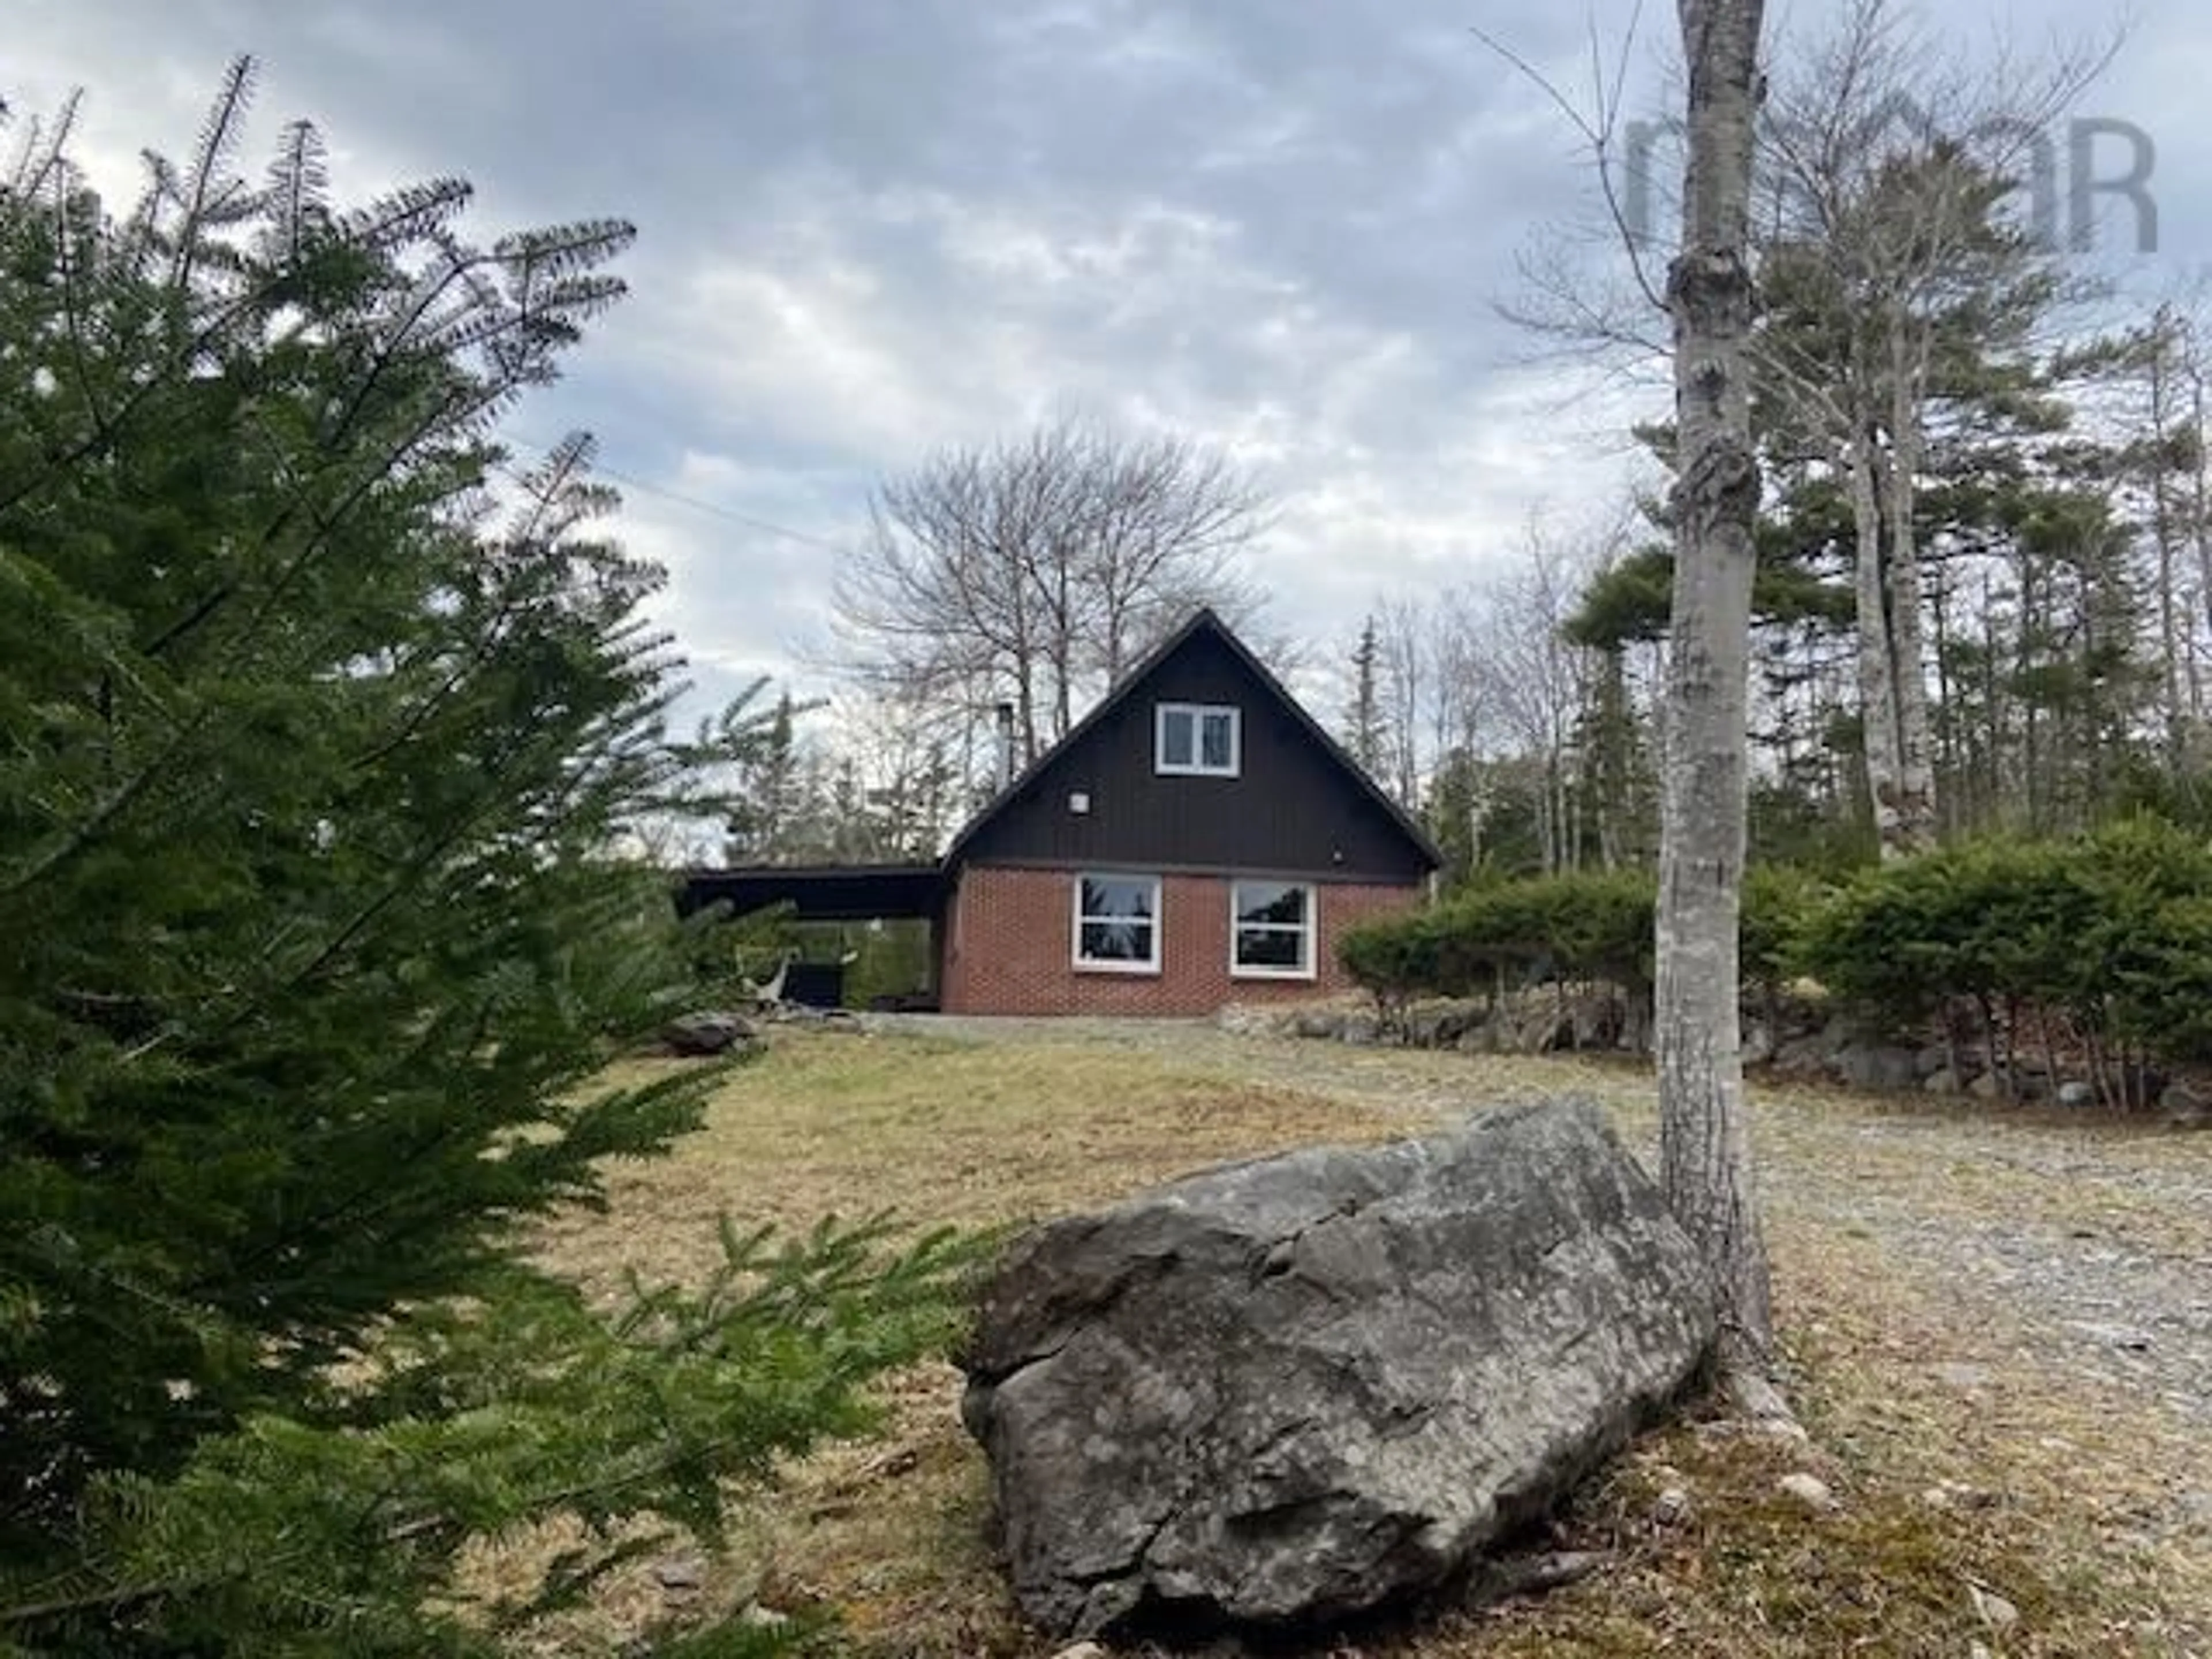 Cottage for 645 East Sable Rd, East Sable River Nova Scotia B0T 1V0